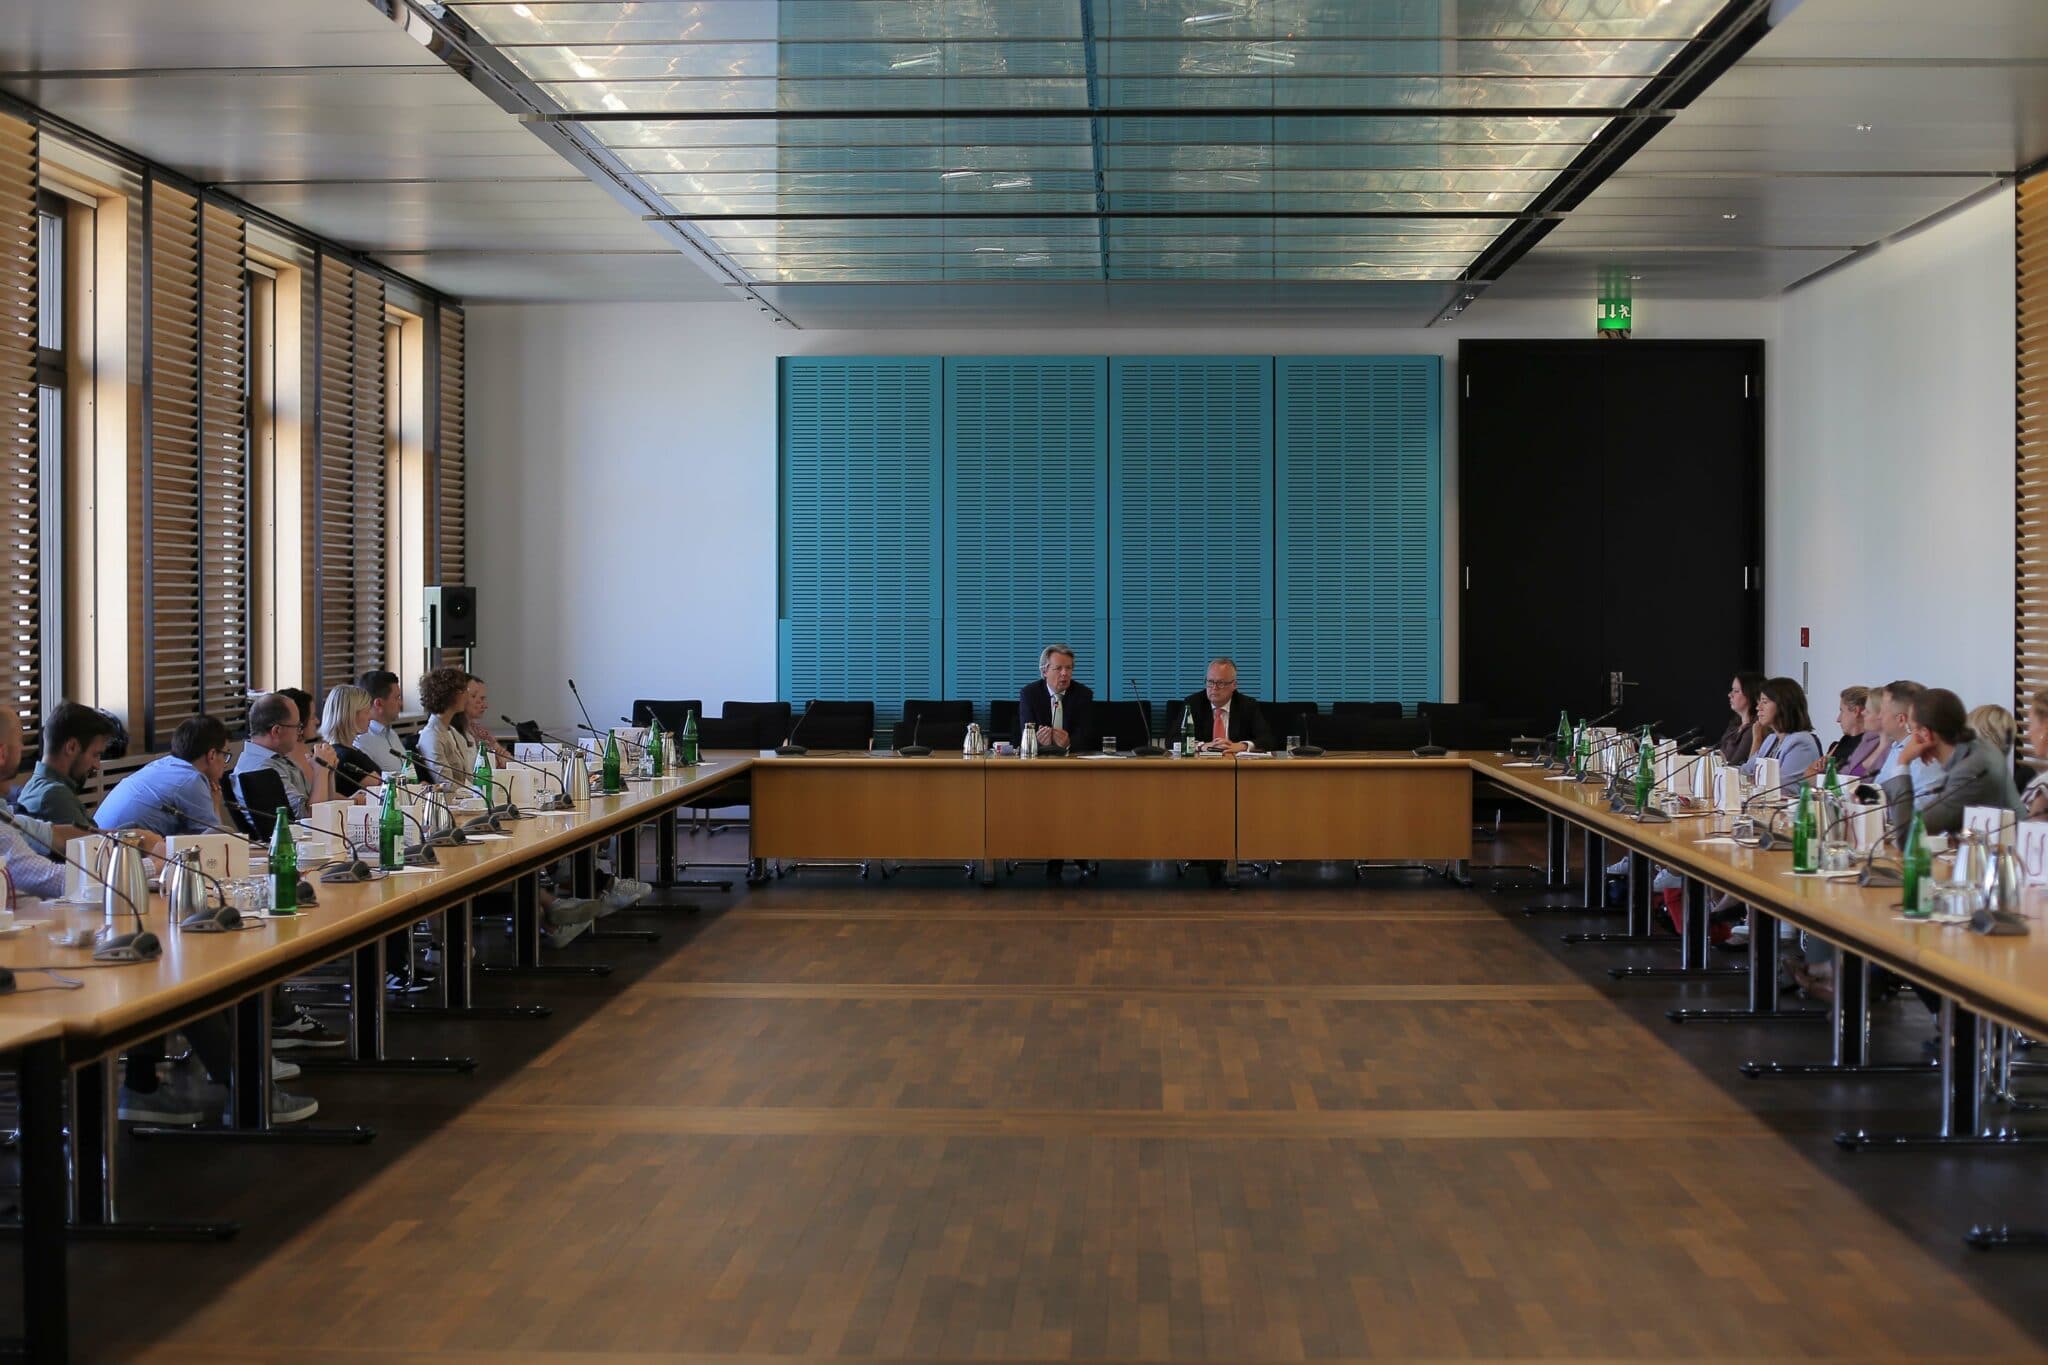 Zu Gast im Bundesrat beim stellvertretenden Direktor Dr. Georg Kleeman. (Foto: Anelienne)